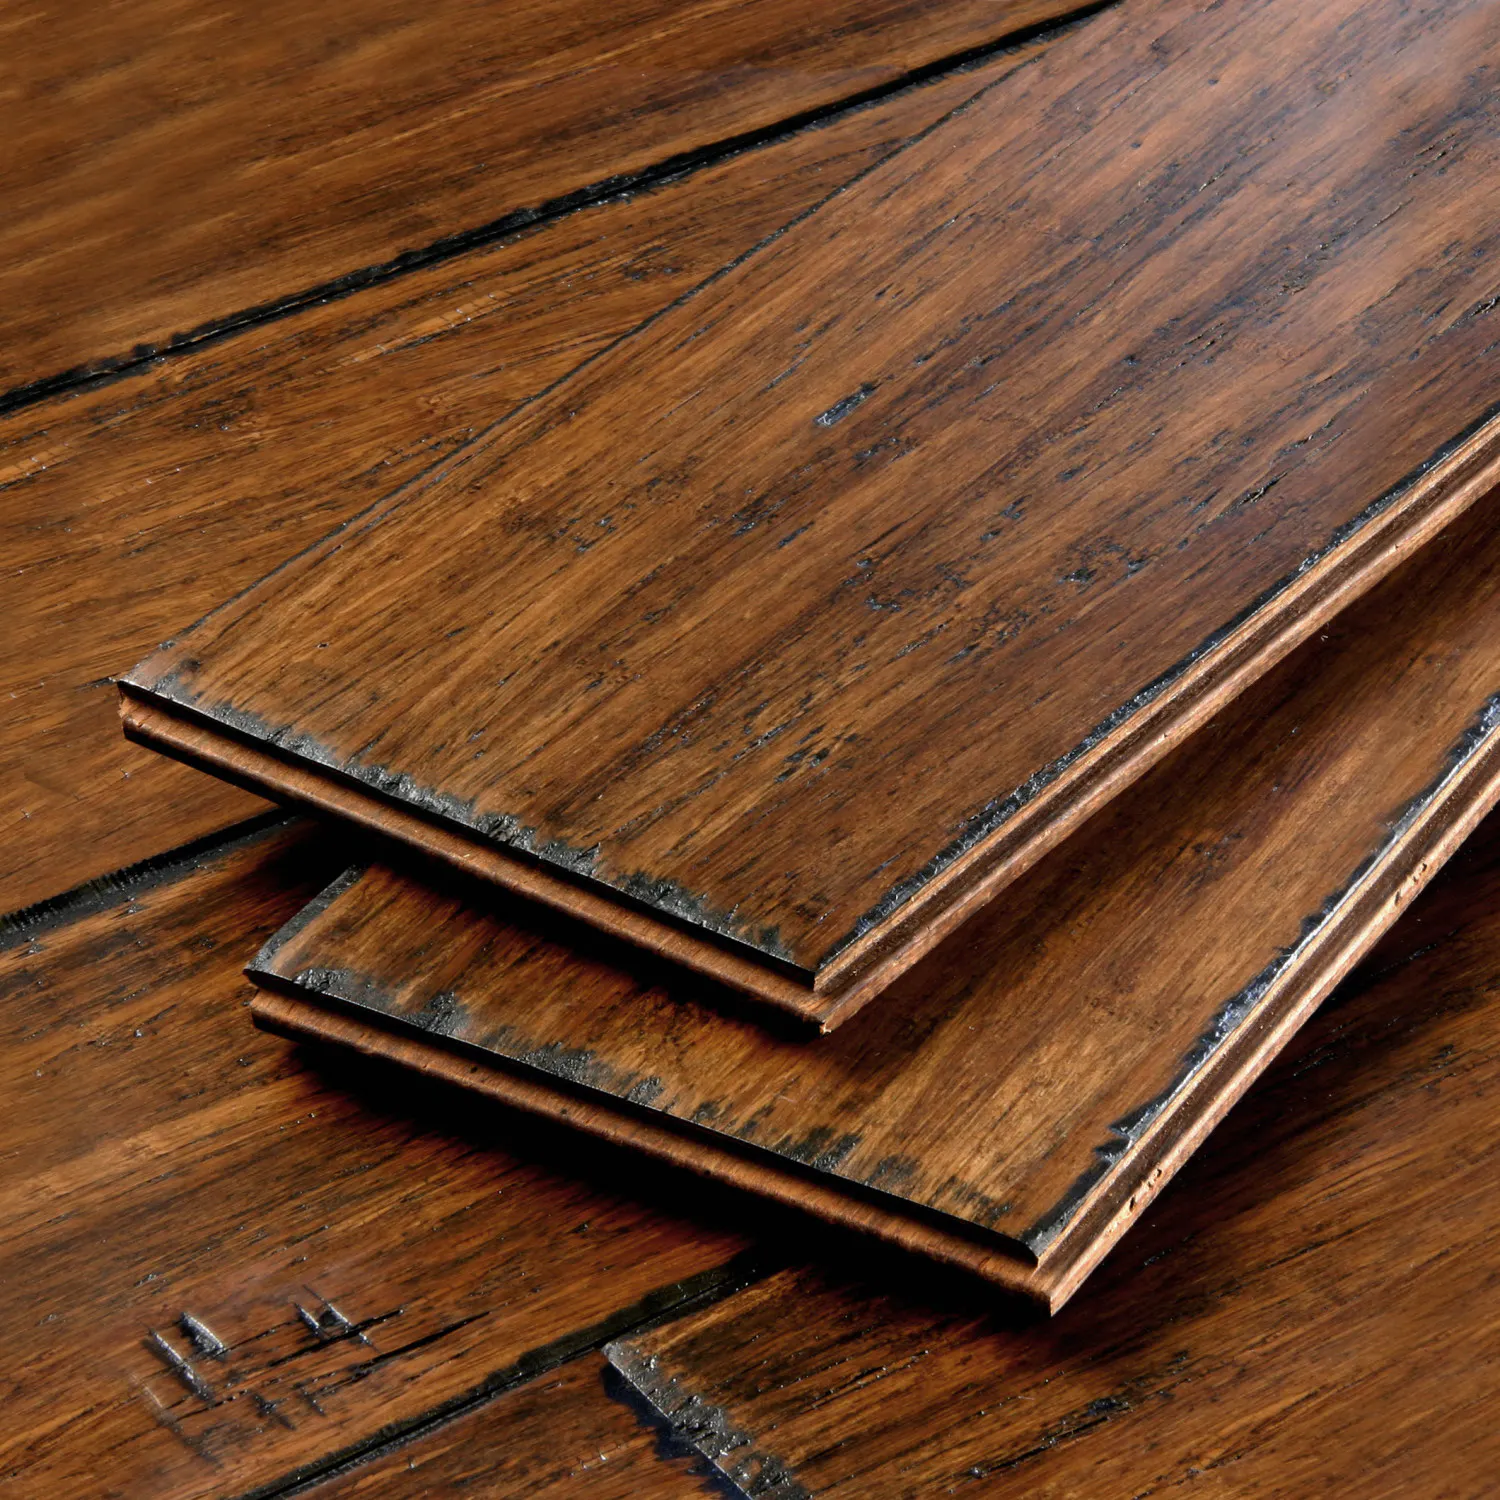 Hardwood floors sewall's point